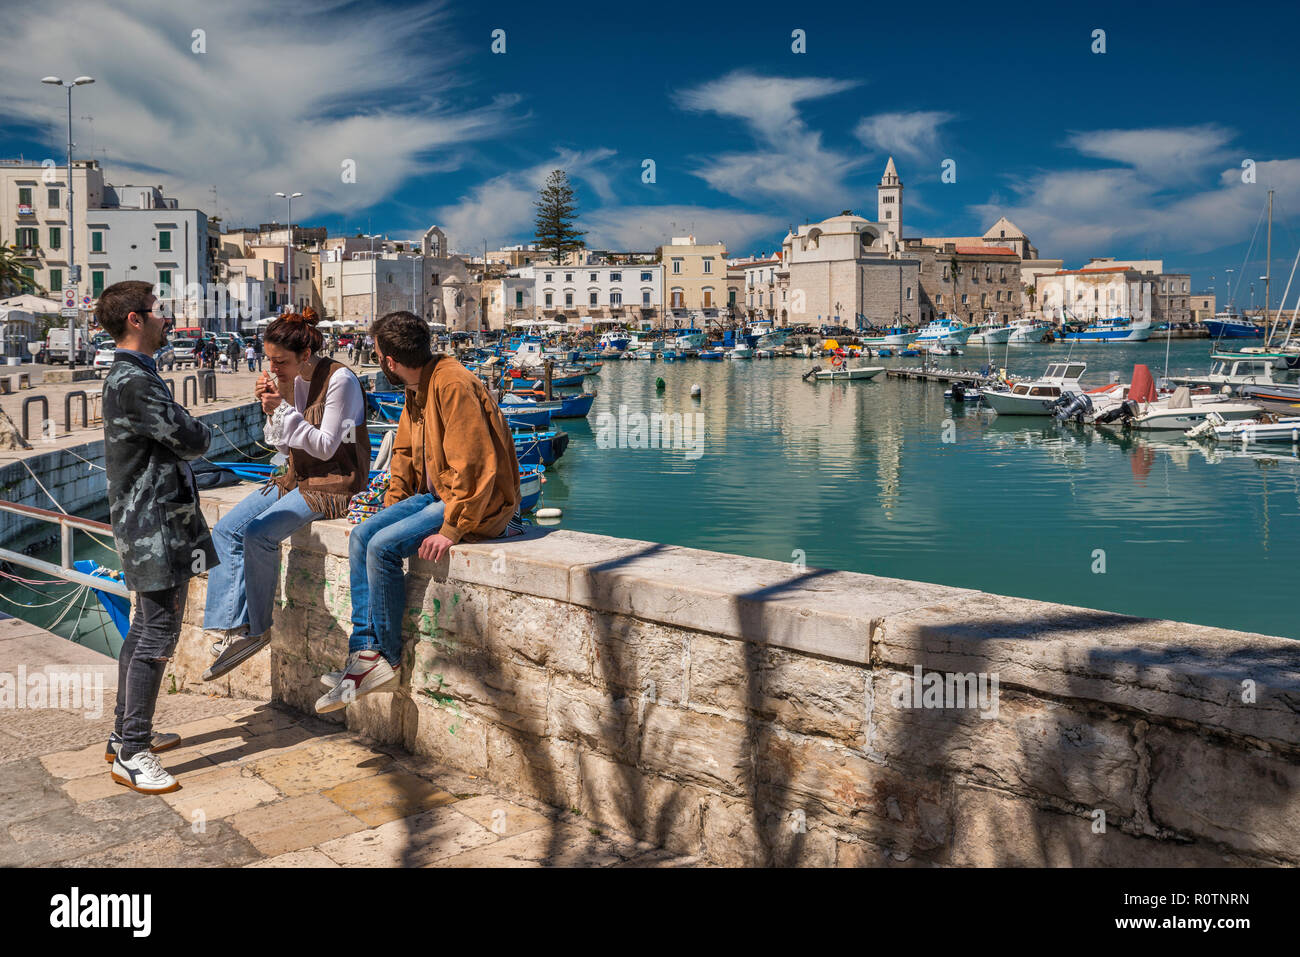 Il gruppo di amici a waterfront, centro storico in distanza, Trani, Puglia, Italia Foto Stock